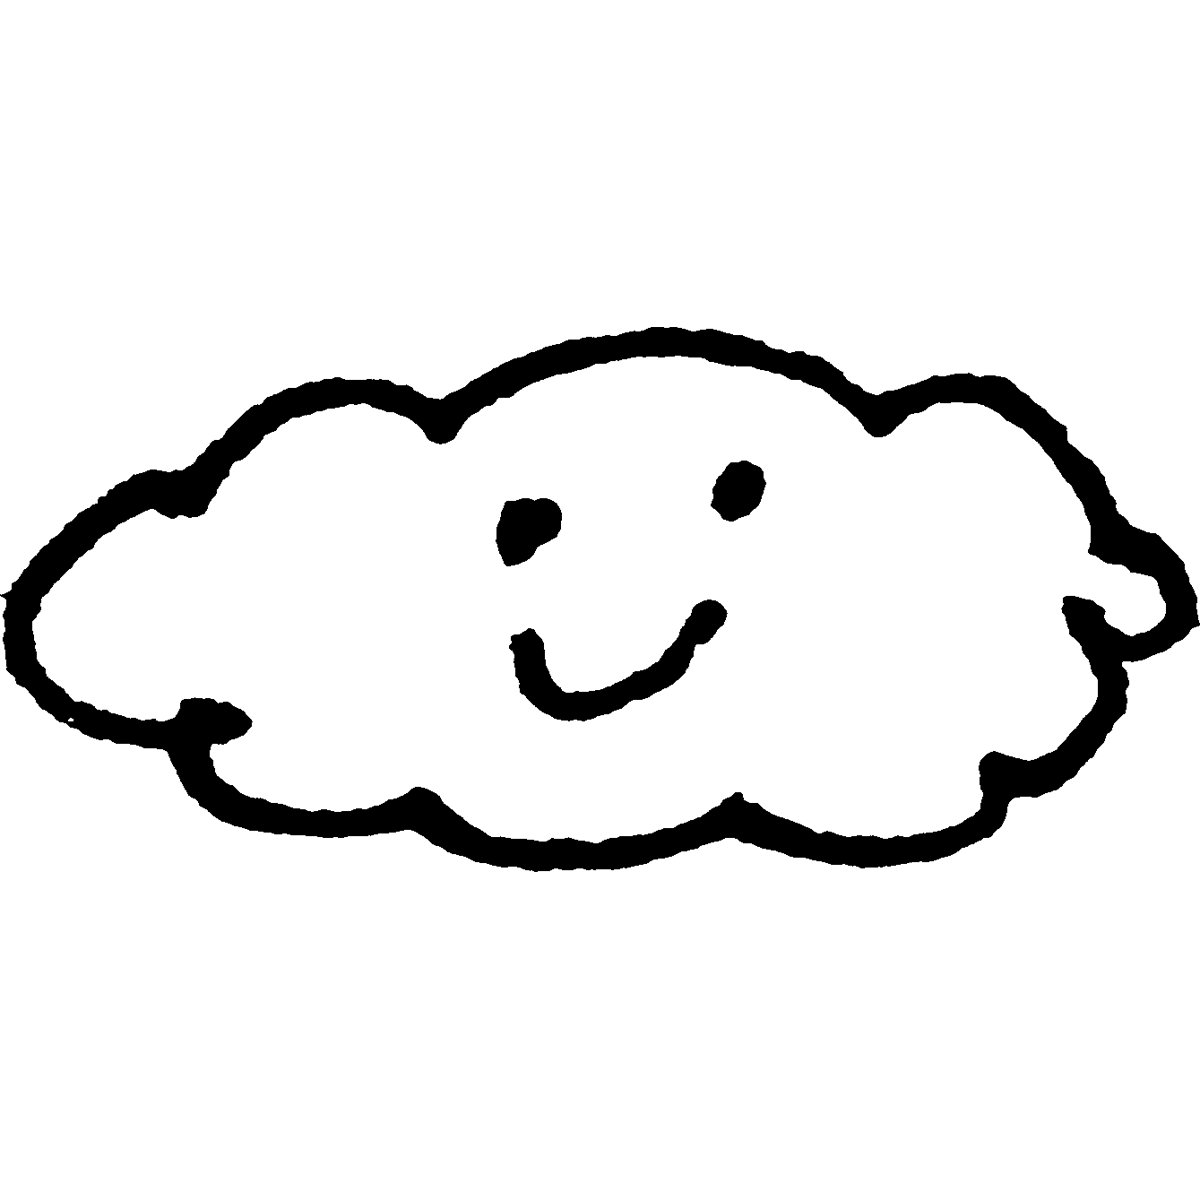 雲（ふつう）のイラスト / Clouds (usually) Illustration